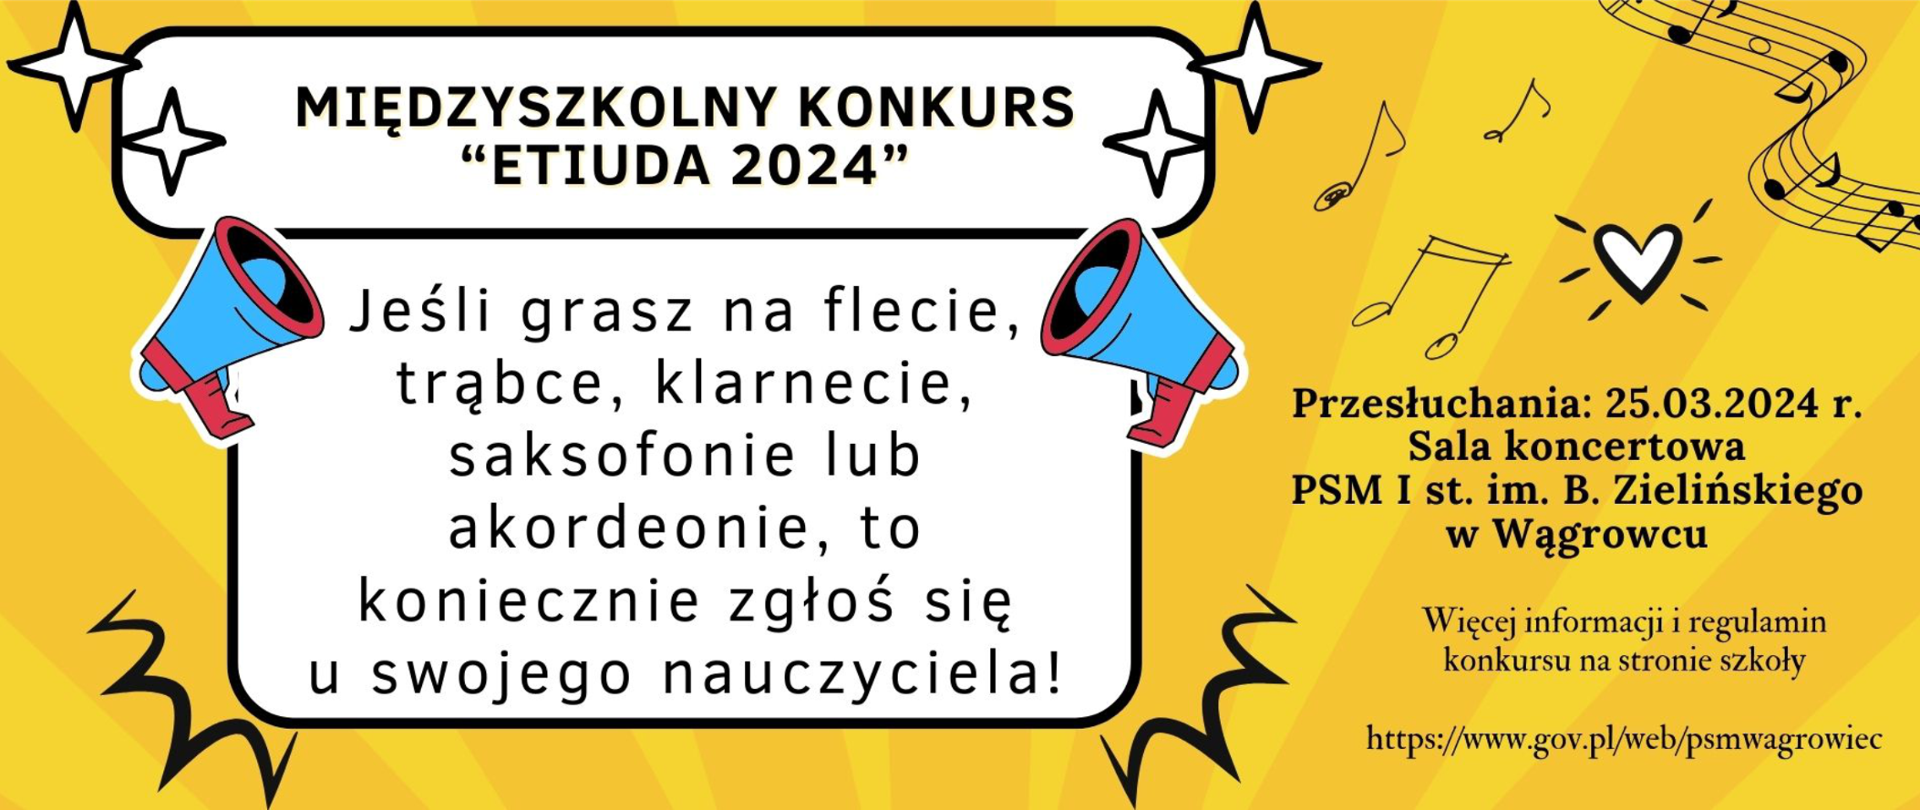 Na biało żółtym tle baneru reklamowego znajdują się informacje dotyczące międzyszkolnego konkursu ETIUDA 2024 który odbędzie się 25 marca 2024r. na sali koncertowej Państwowej Szkoły Muzycznej I stopnia imienia Bronisława Zielińskiego w Wągrowcu.